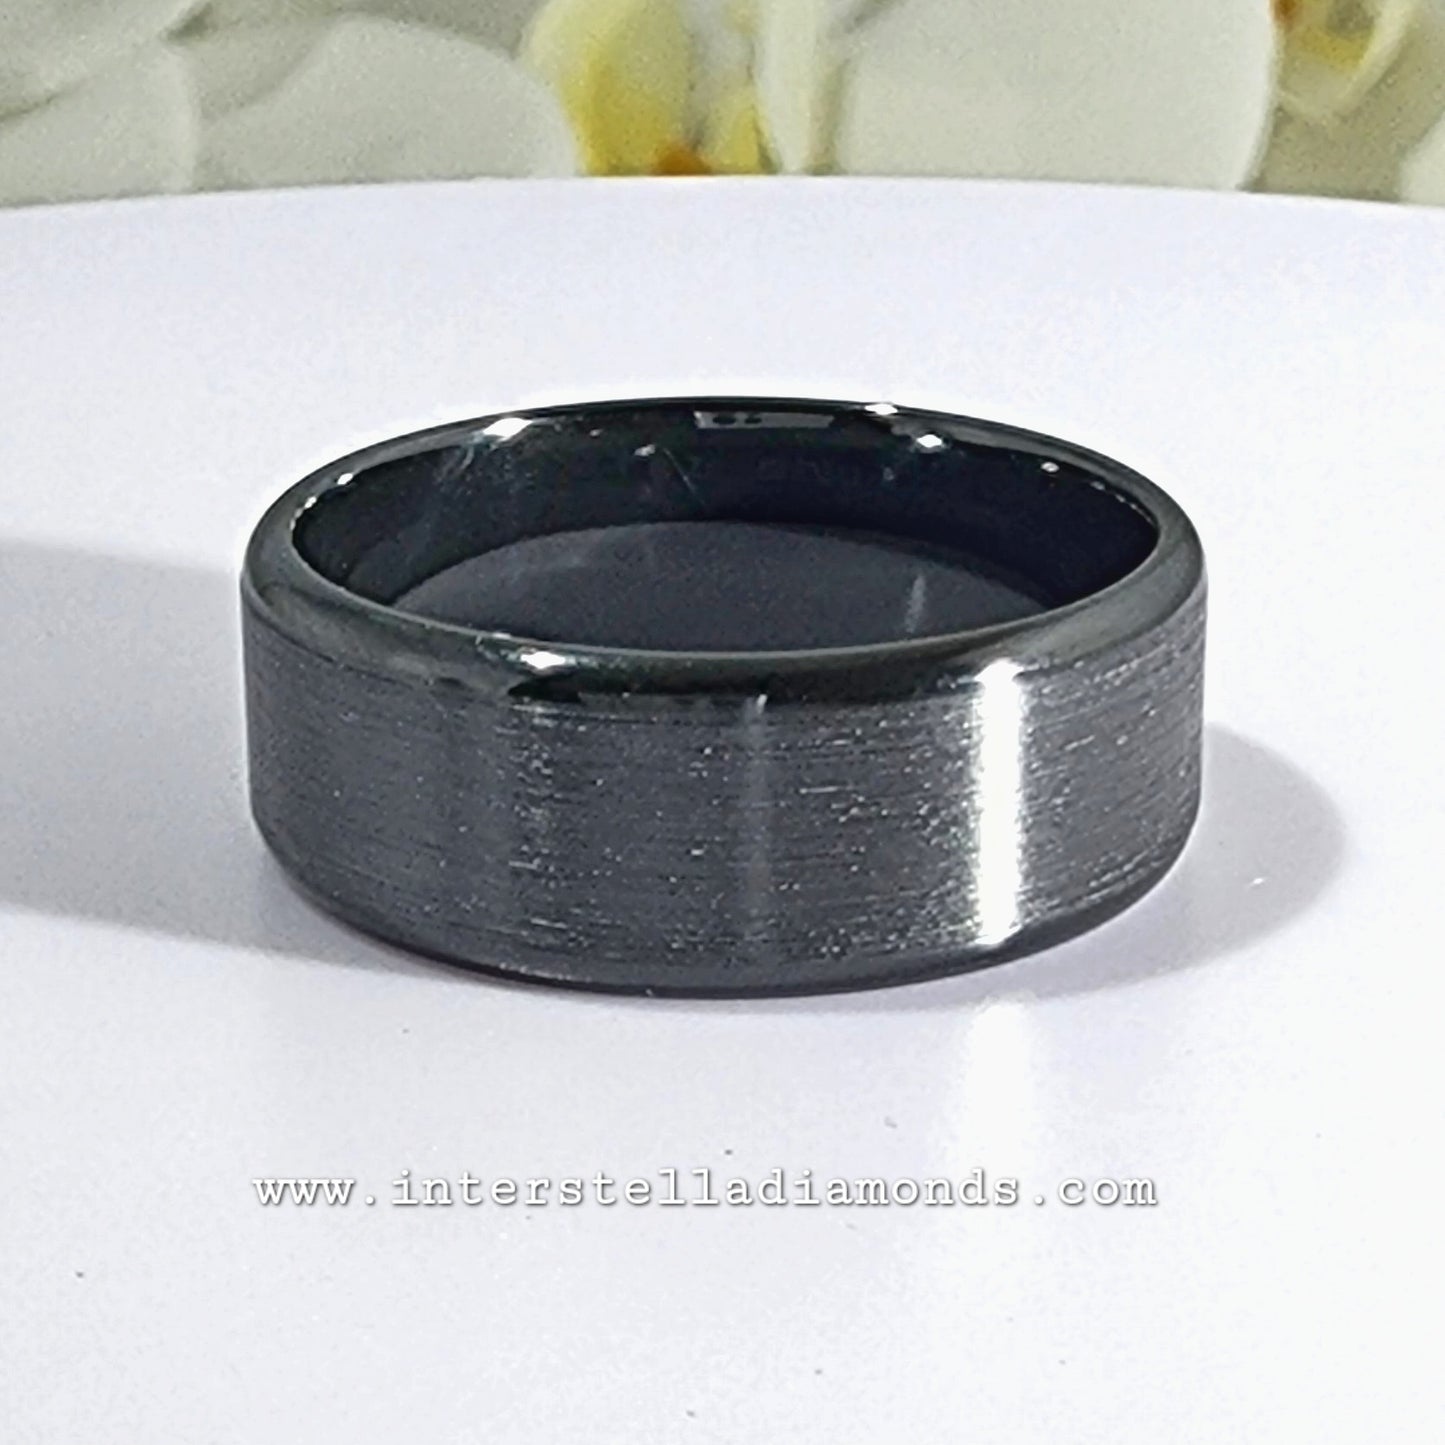 Mens Wedding Ring. Zirconium